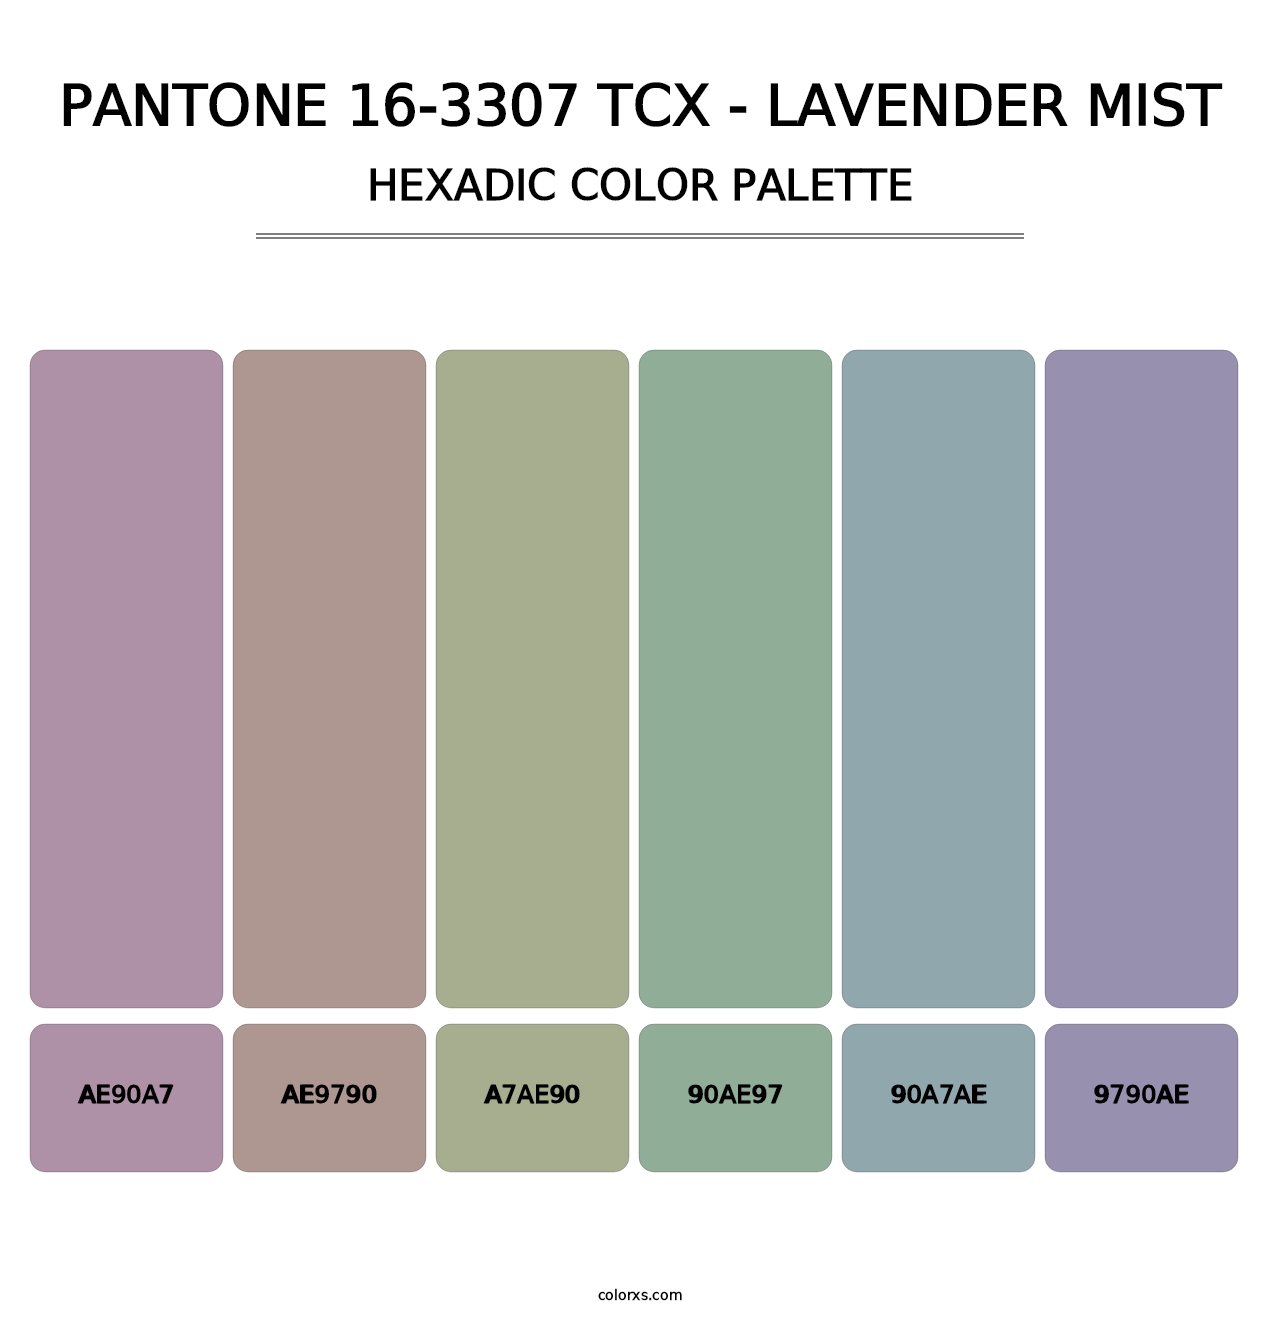 PANTONE 16-3307 TCX - Lavender Mist - Hexadic Color Palette